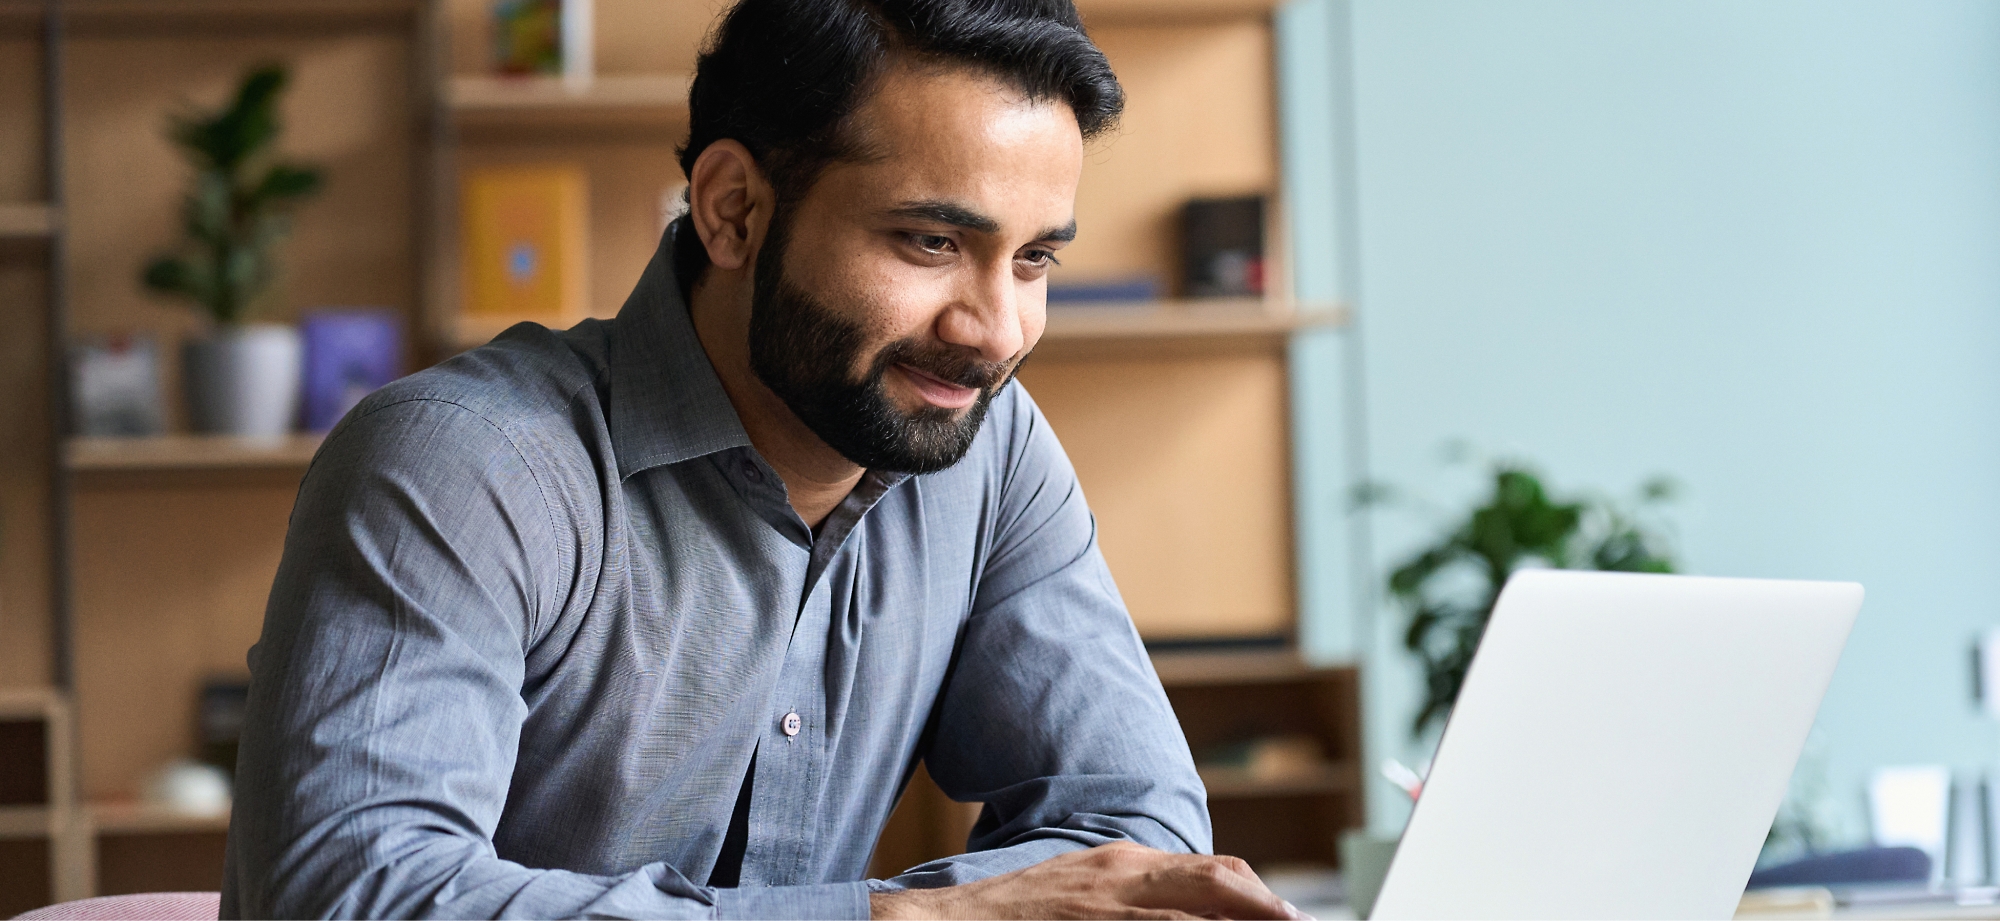 Een glimlachende man die op een laptop werkt in een kantoor met schappen op de achtergrond.